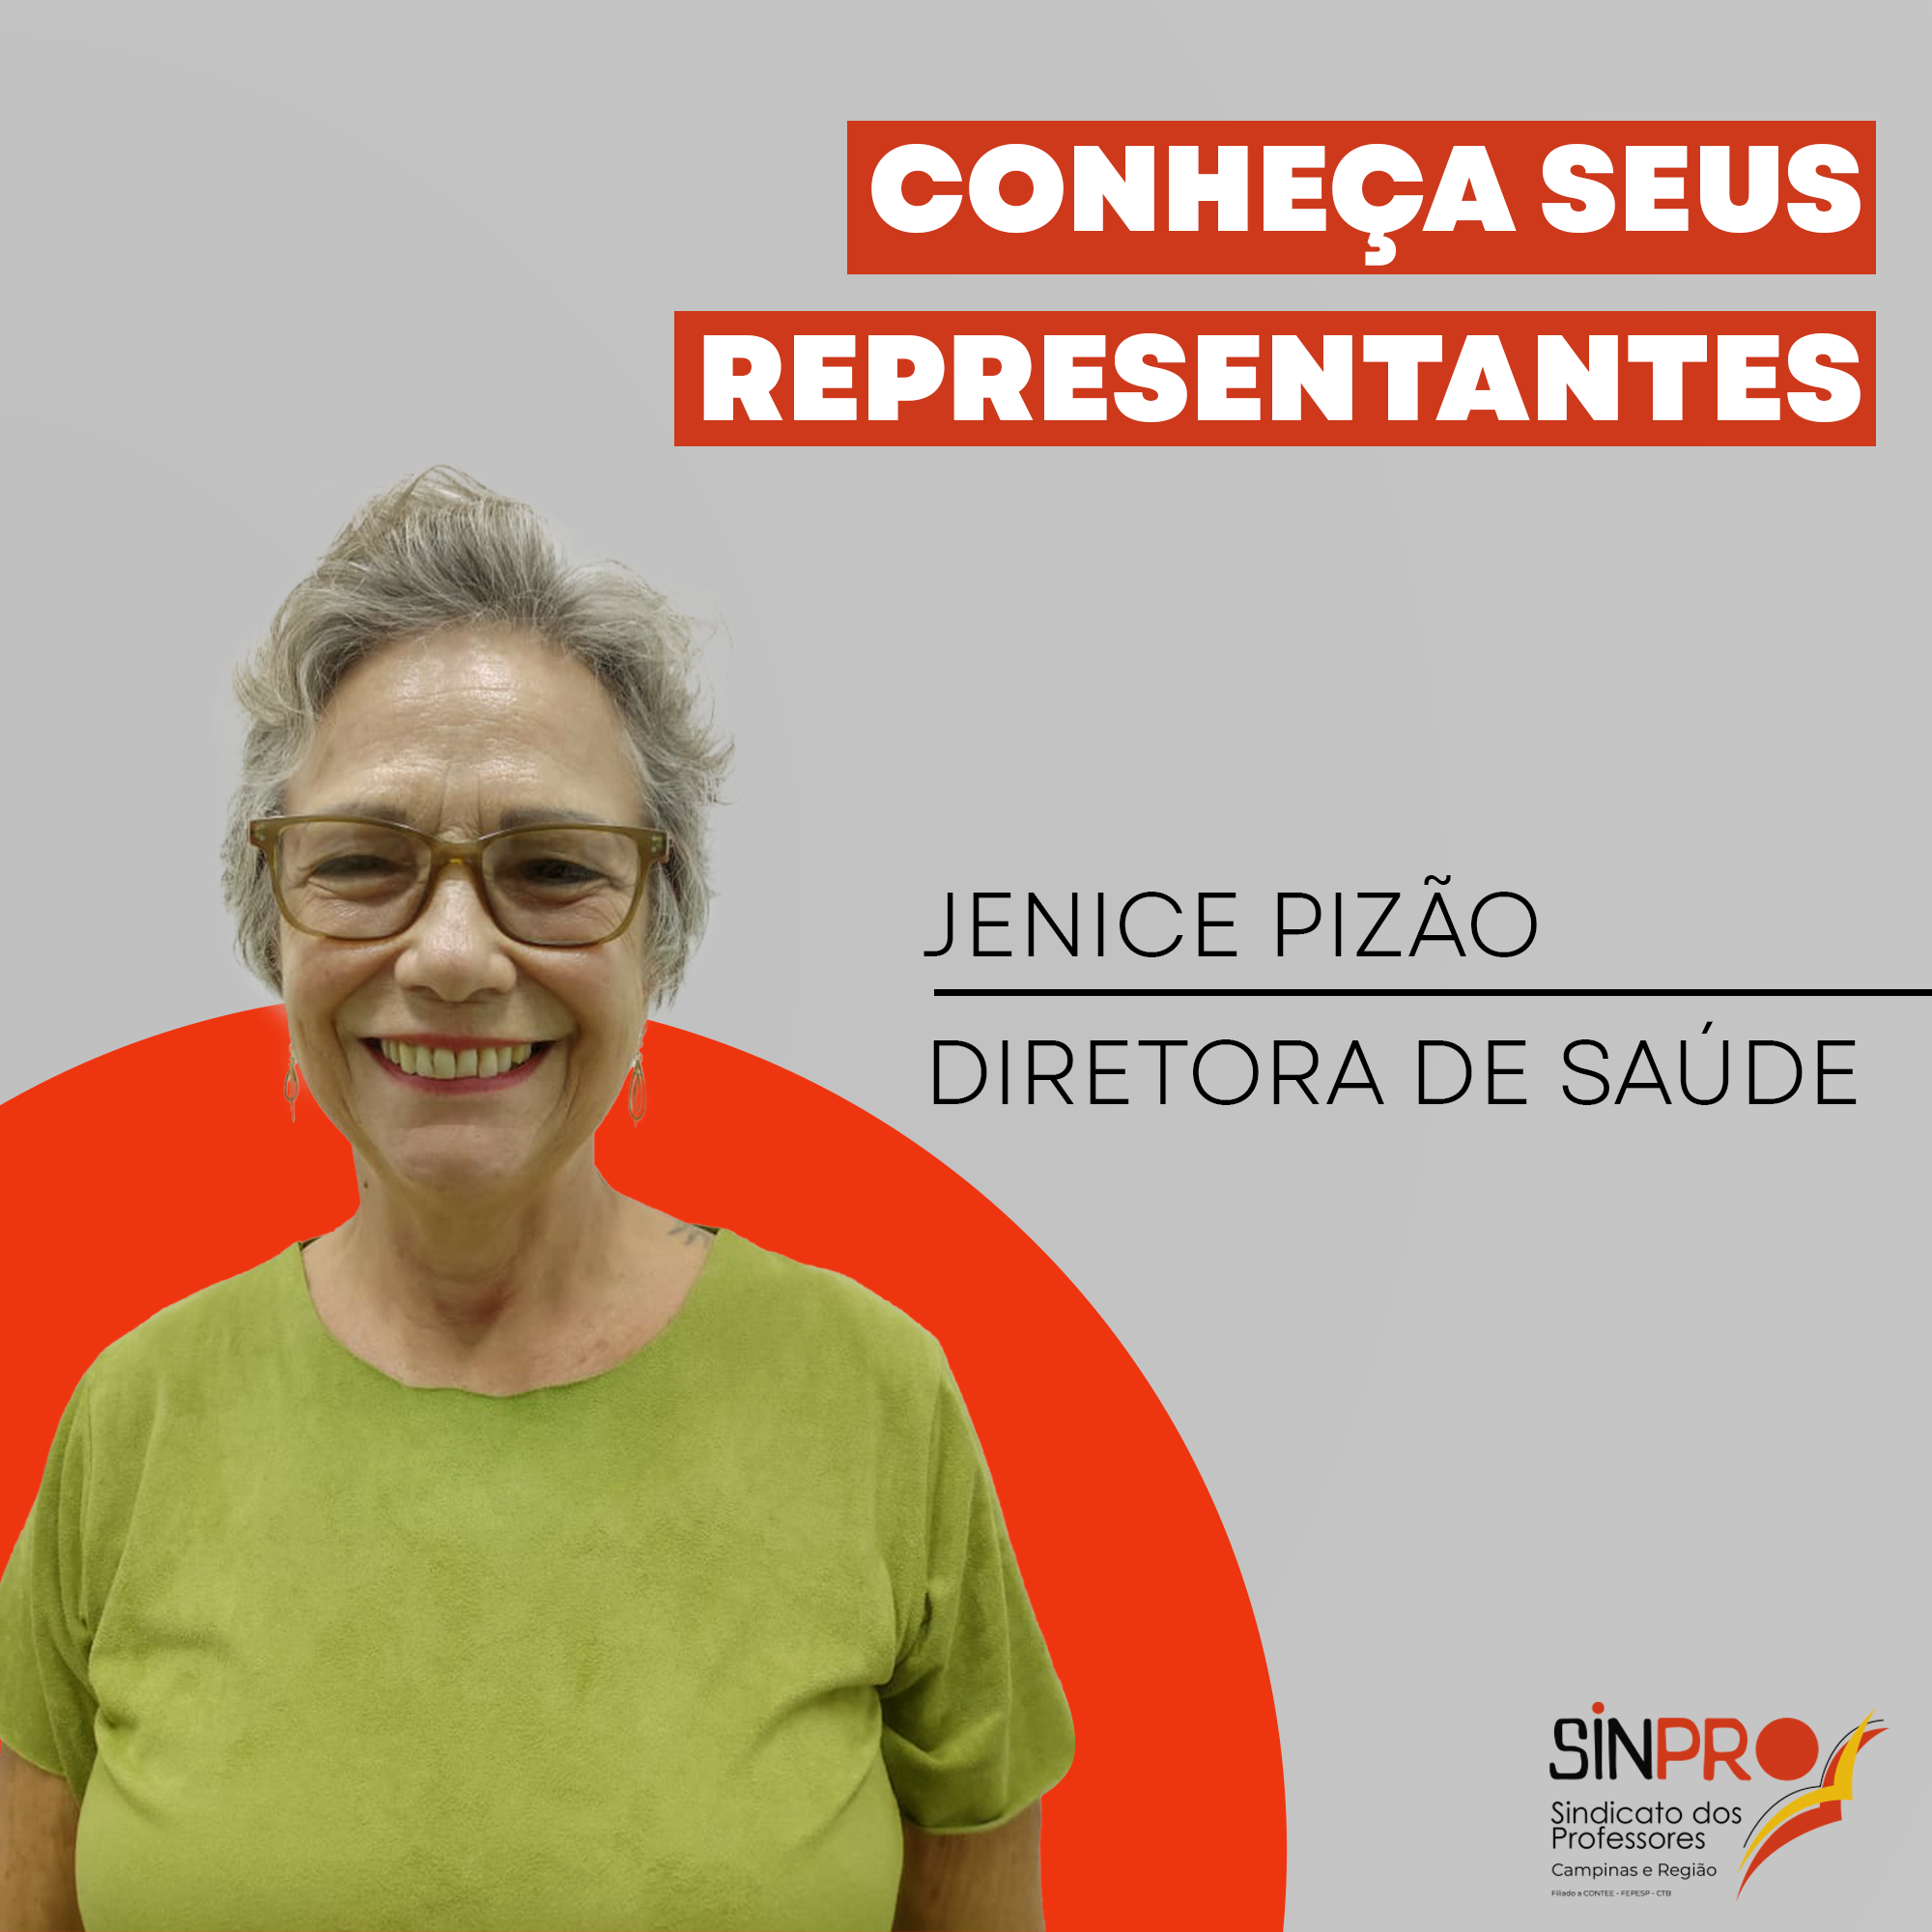 Conheça seus representantes – Jenice Pizão